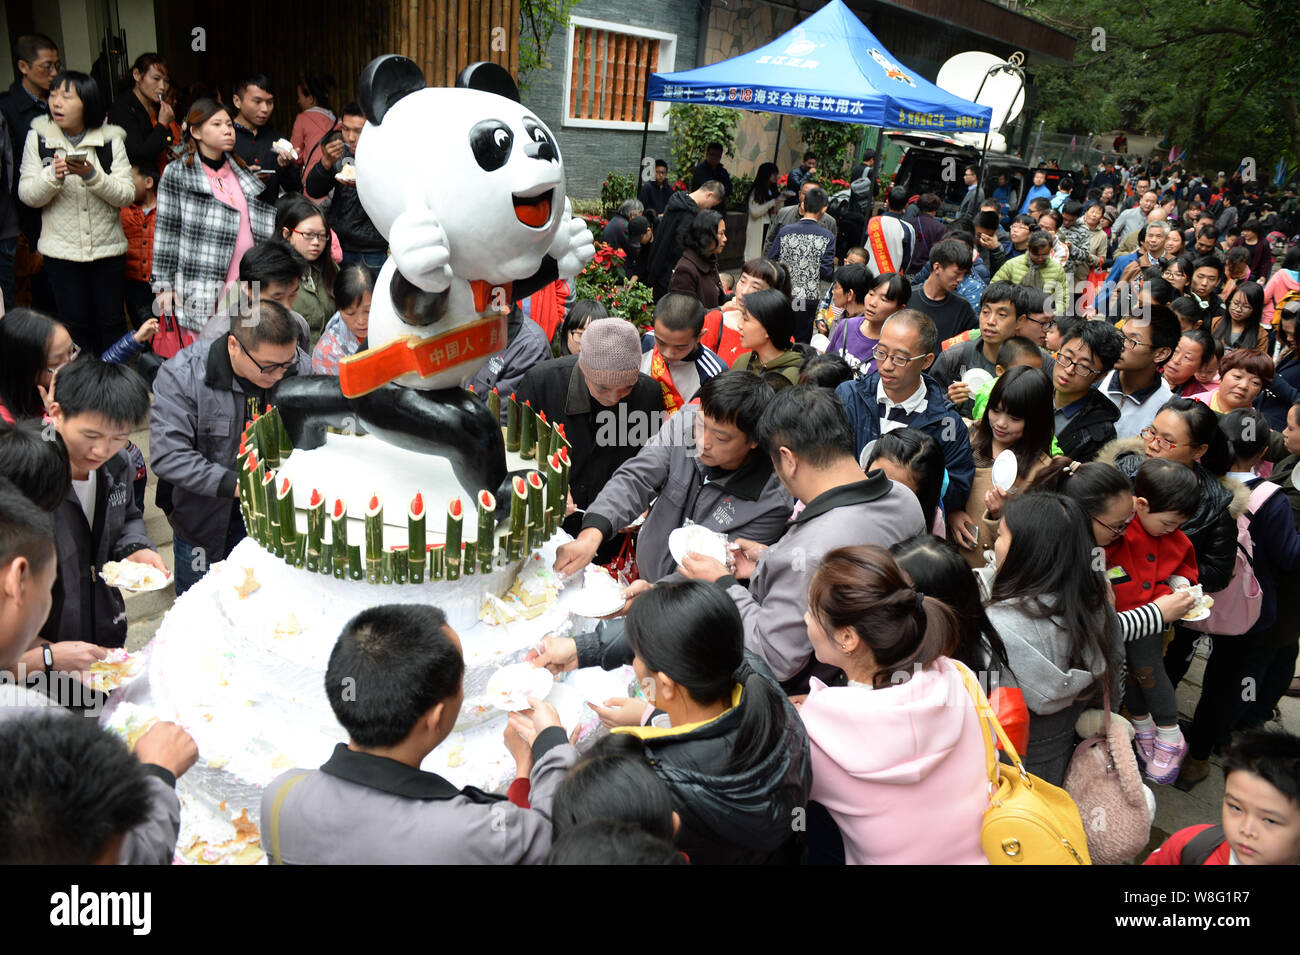 Les gens partagent gâteaux pendant une fête pour célébrer le panda géant femelle Basi's 35ème anniversaire au Shanghai Grand Panda Research Center à Fuzhou City, south Banque D'Images